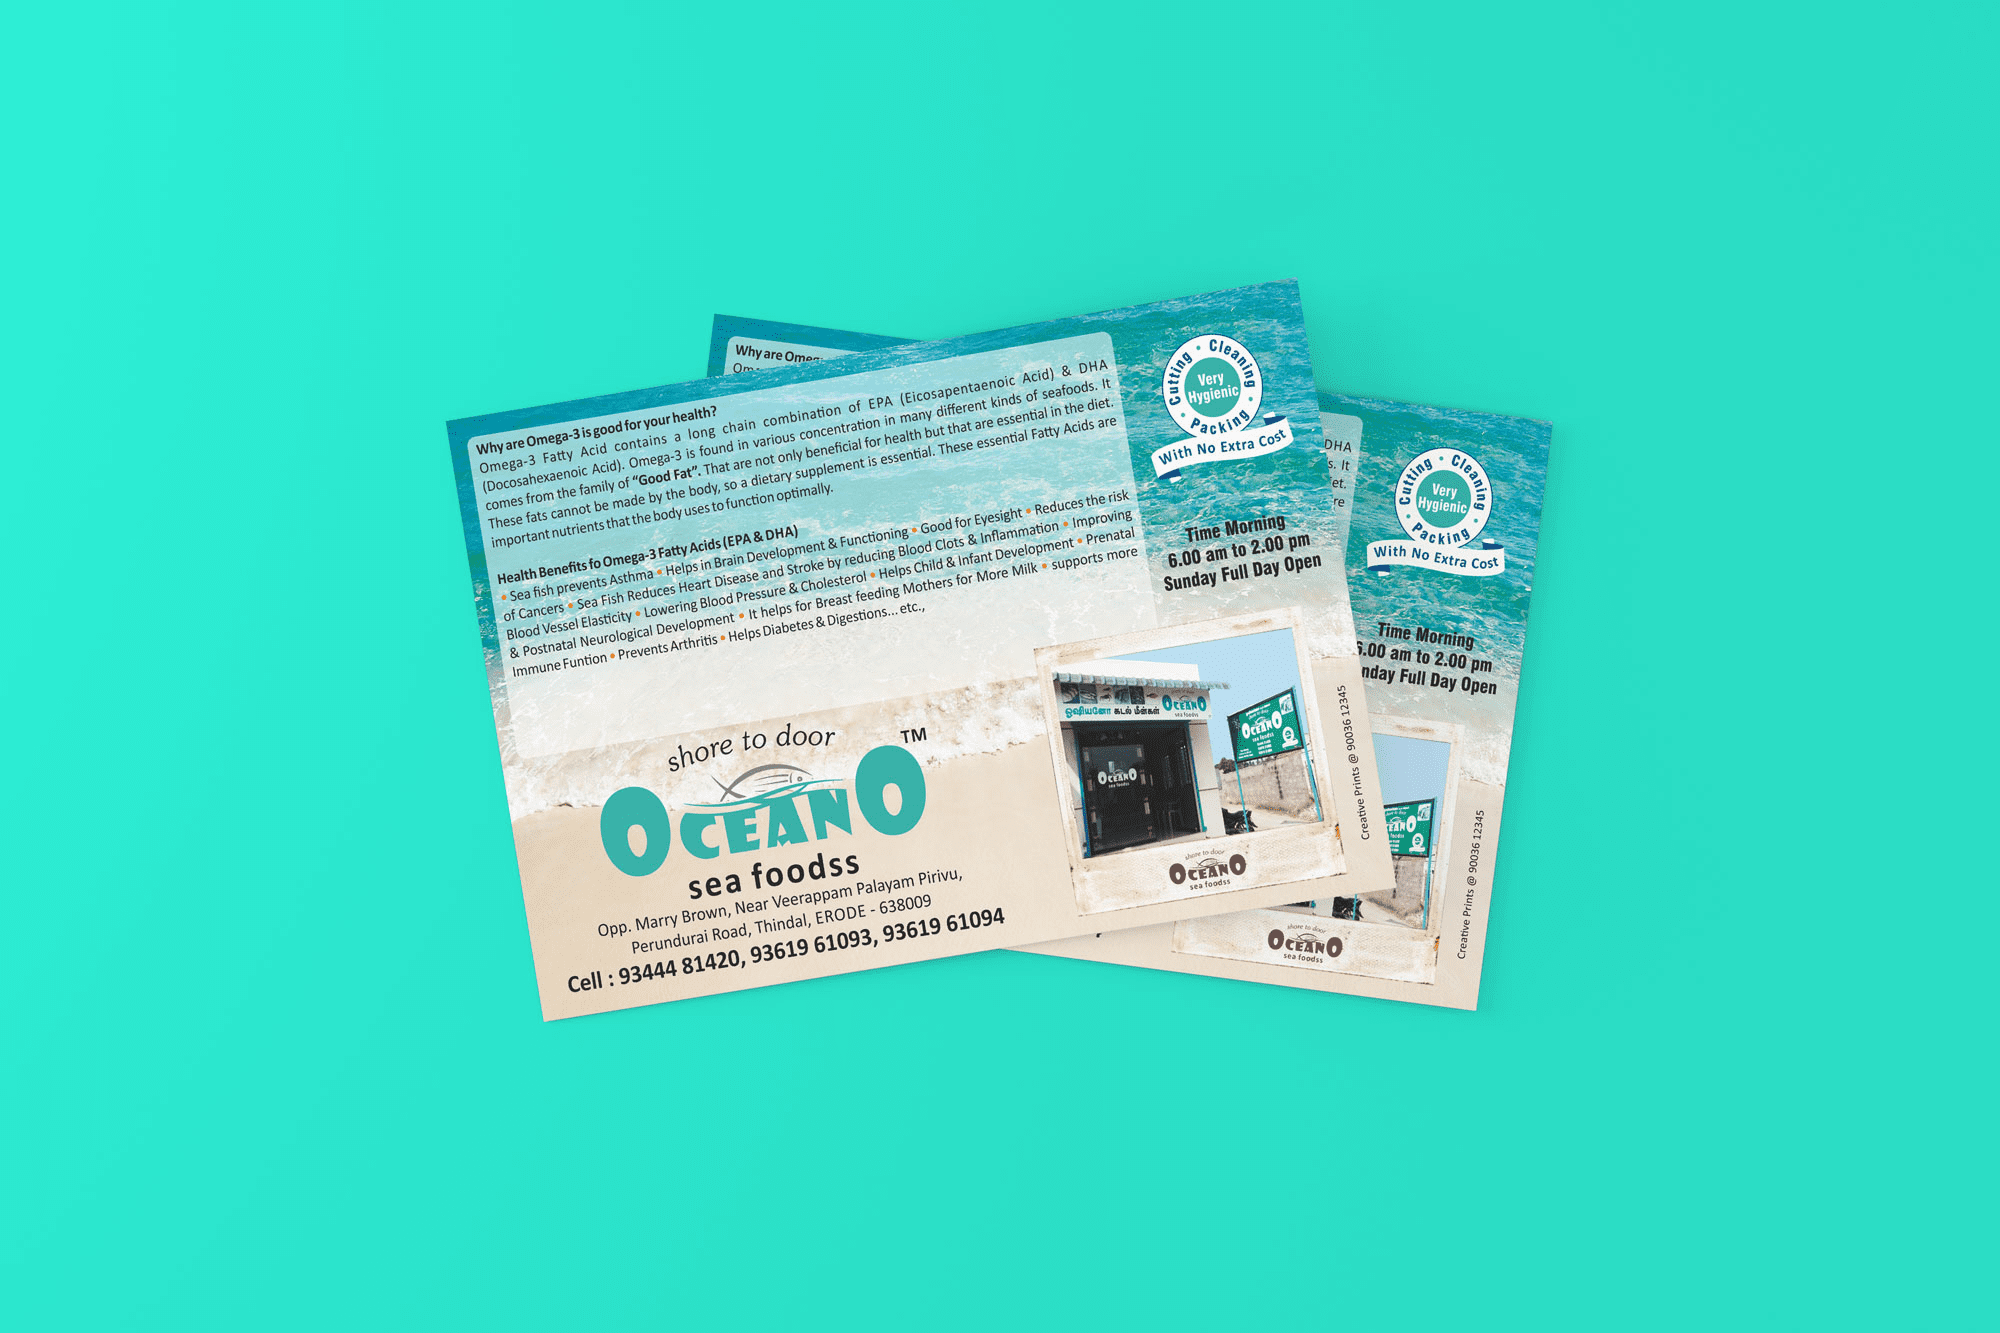 Oceano Sea Food Handbill Branding Design Digital Marketing in Chennai by Violet Spark